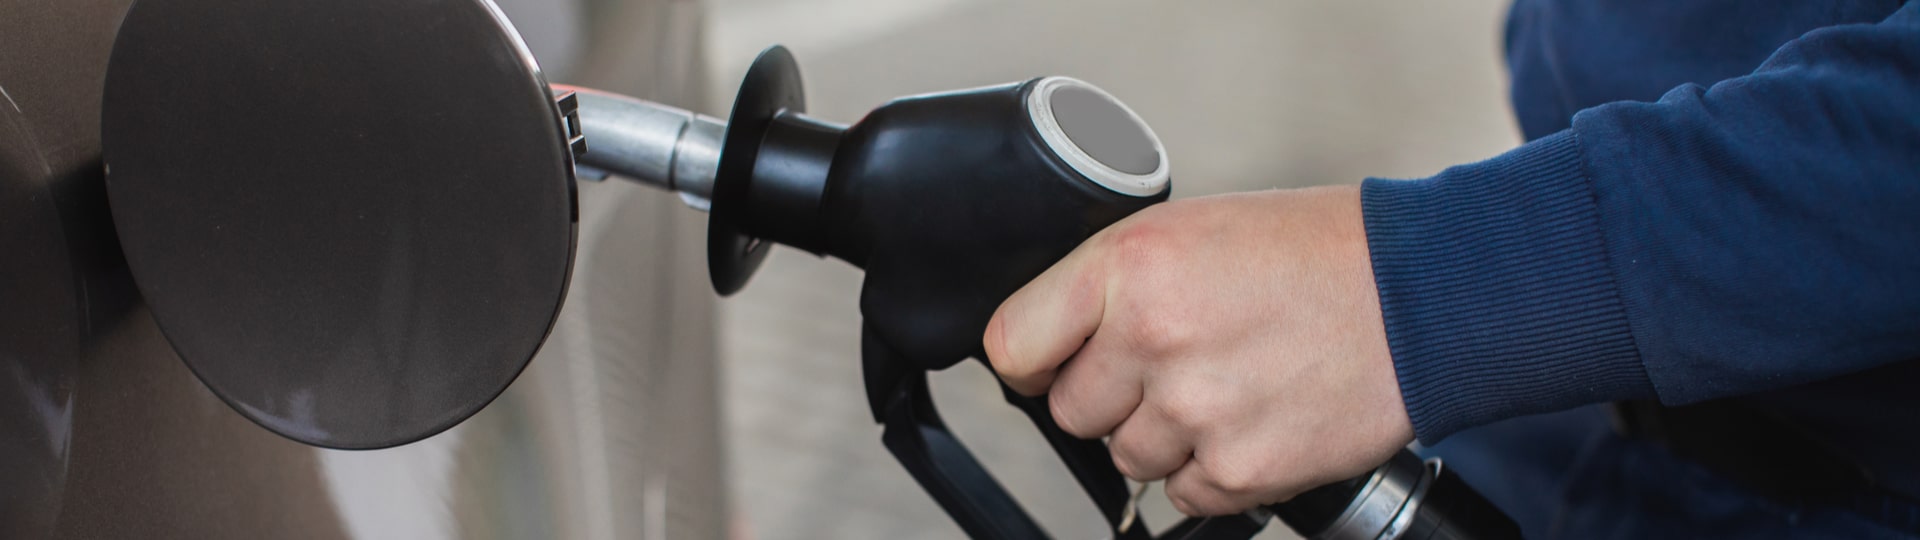 Ceny pohonných hmot v ČR rostou. Lidem se vyplatí vyrazit do Polska